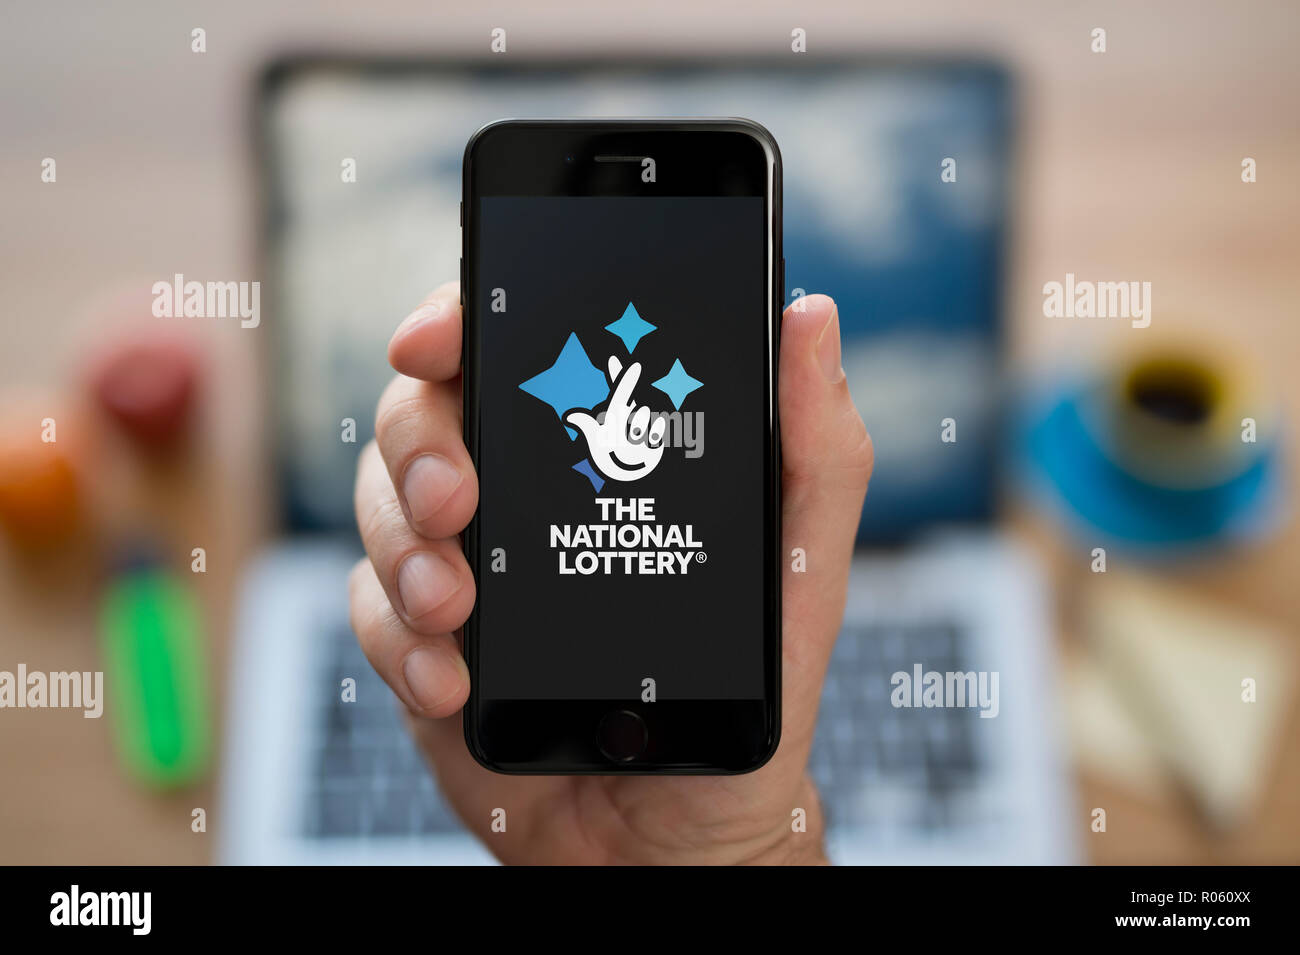 Un homme se penche sur son iPhone qui affiche le logo de la loterie nationale, tout en s'assit à son bureau informatique (usage éditorial uniquement). Banque D'Images